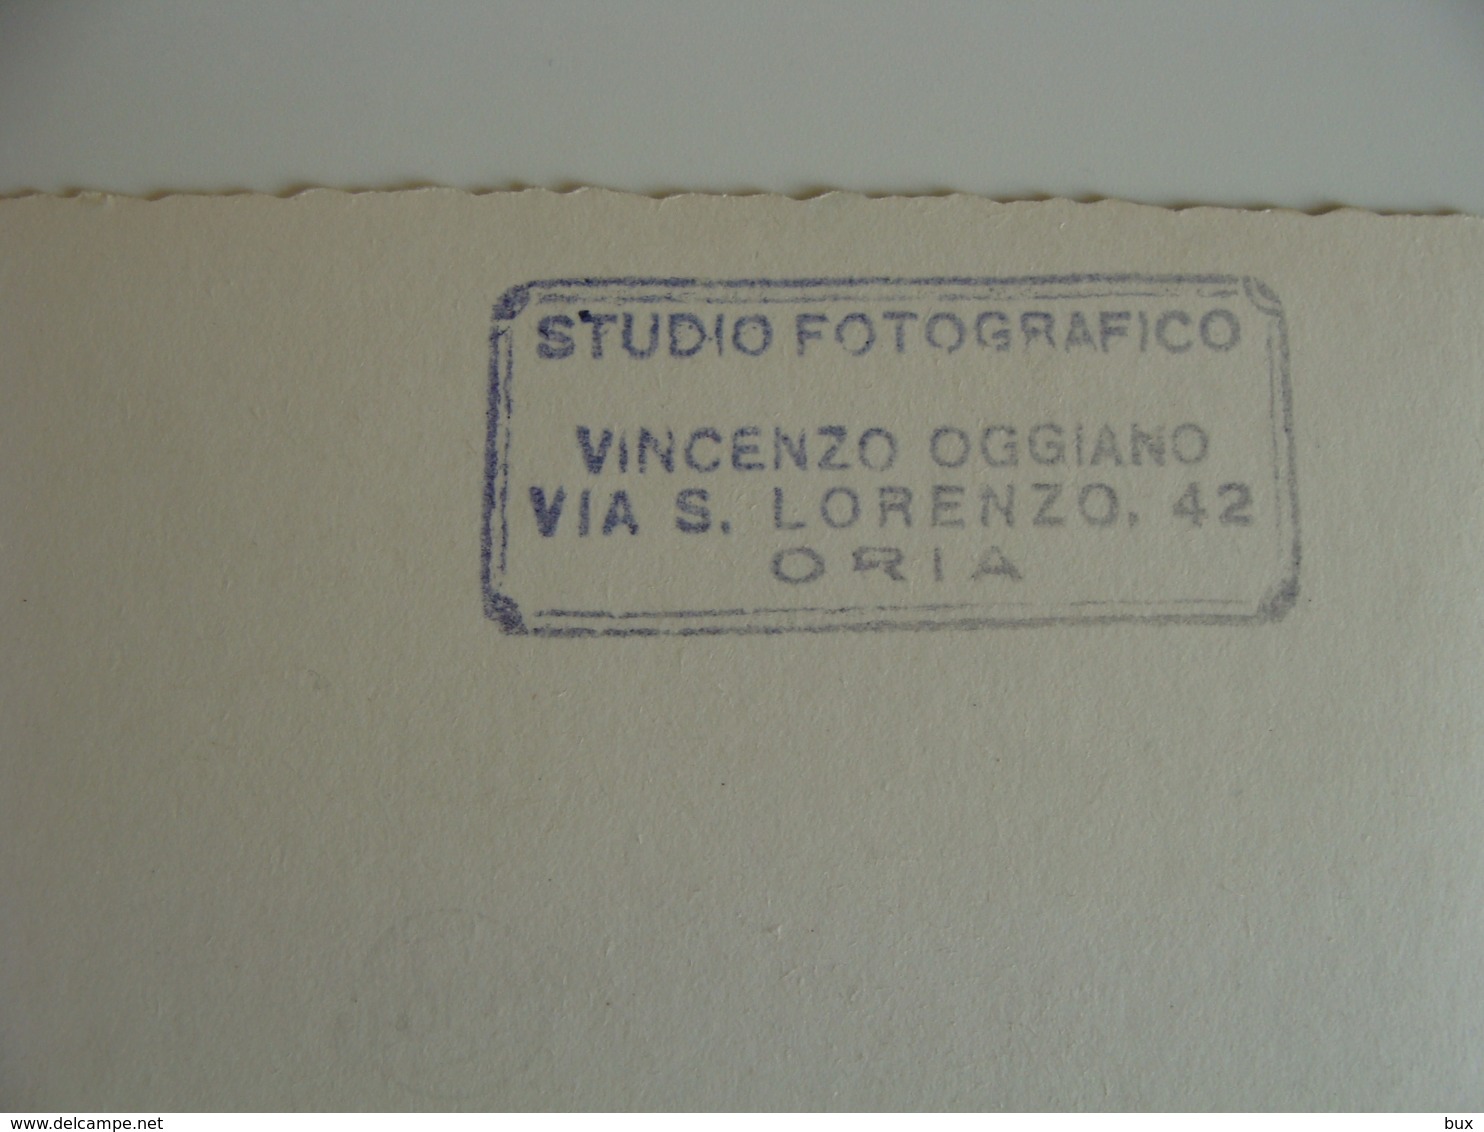 POLIZIA URBANA  POSA CORONA SUL CARTELLO 1962  FOTO  VINCENZO OGGIANO   VIA S. LORENZO ORIA  15   X  10,5  Cm CIRCA - Luoghi